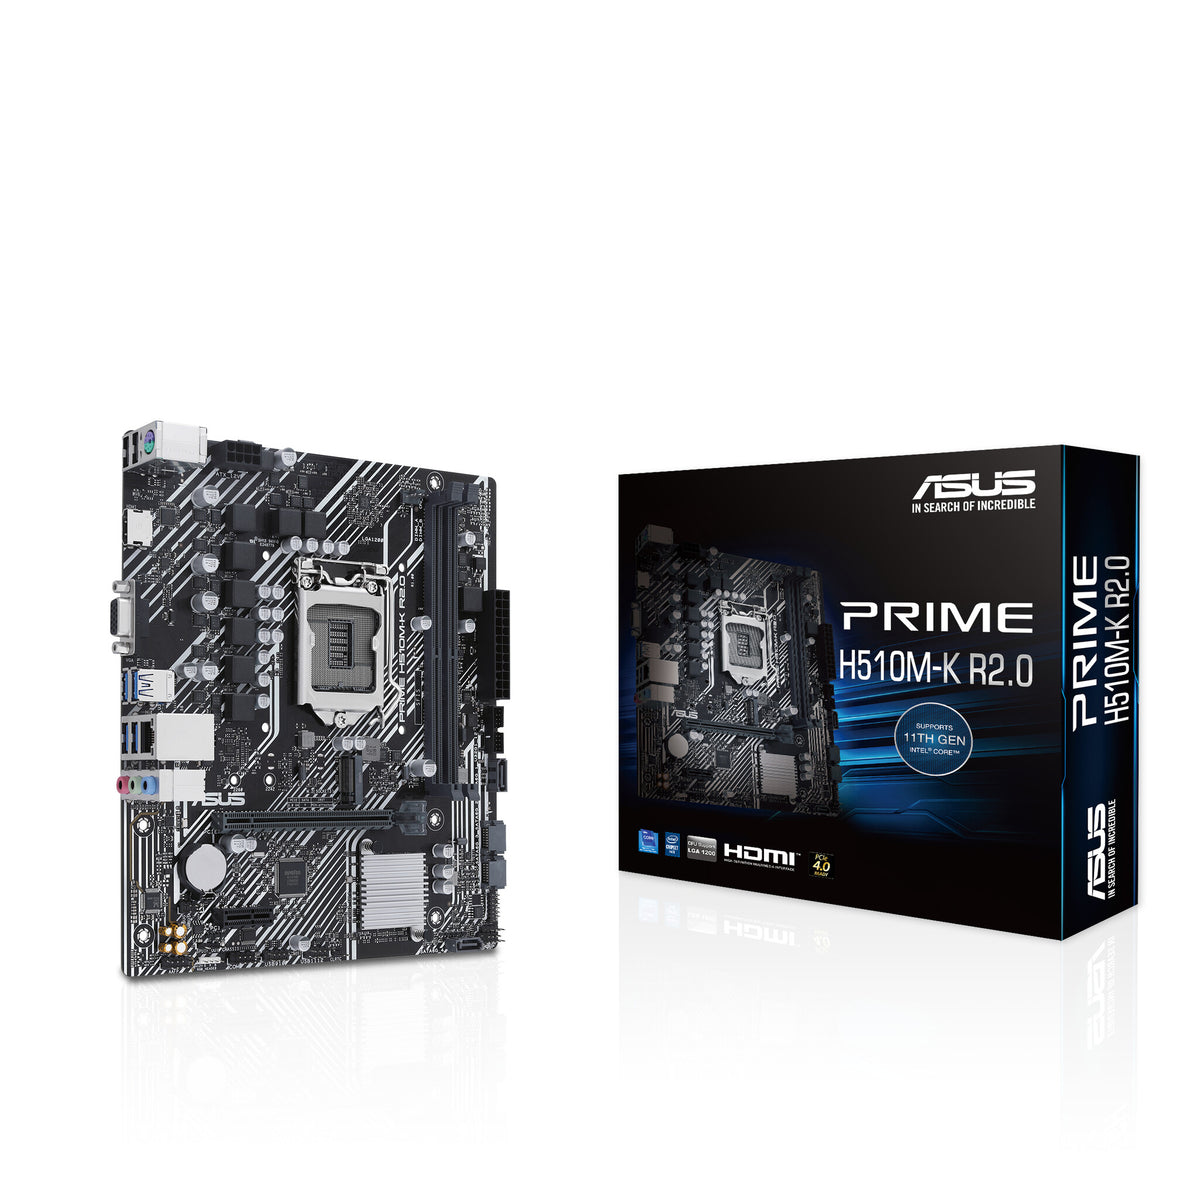 ASUS PRIME H510M-K R2.0 micro ATX motherboard - Intel H510 LGA 1200